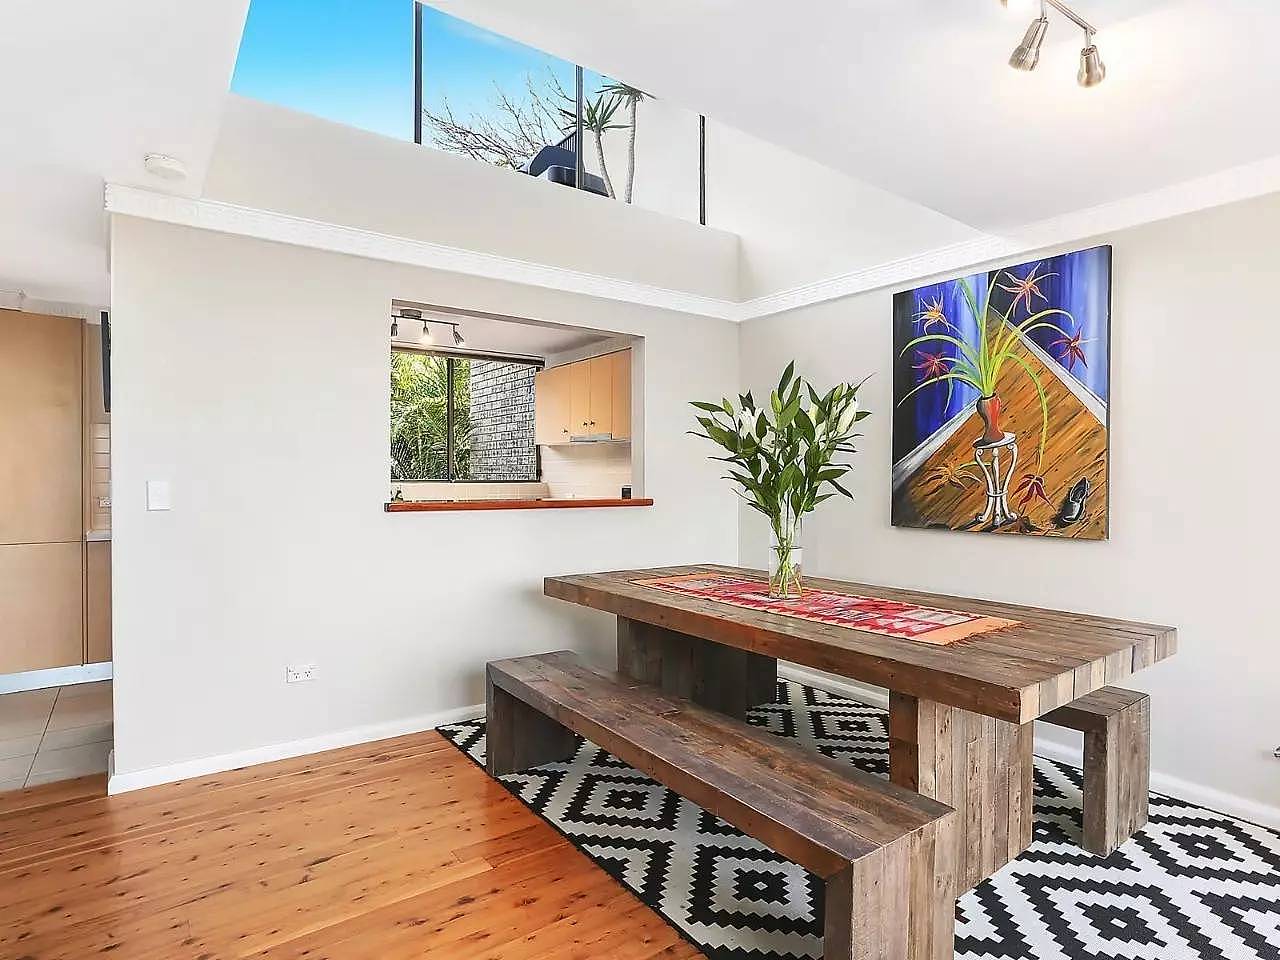 8月悉尼二手房市场拍出的最精彩TOP3套公寓点评| Buyer's Agent专栏20 (独家) - 5